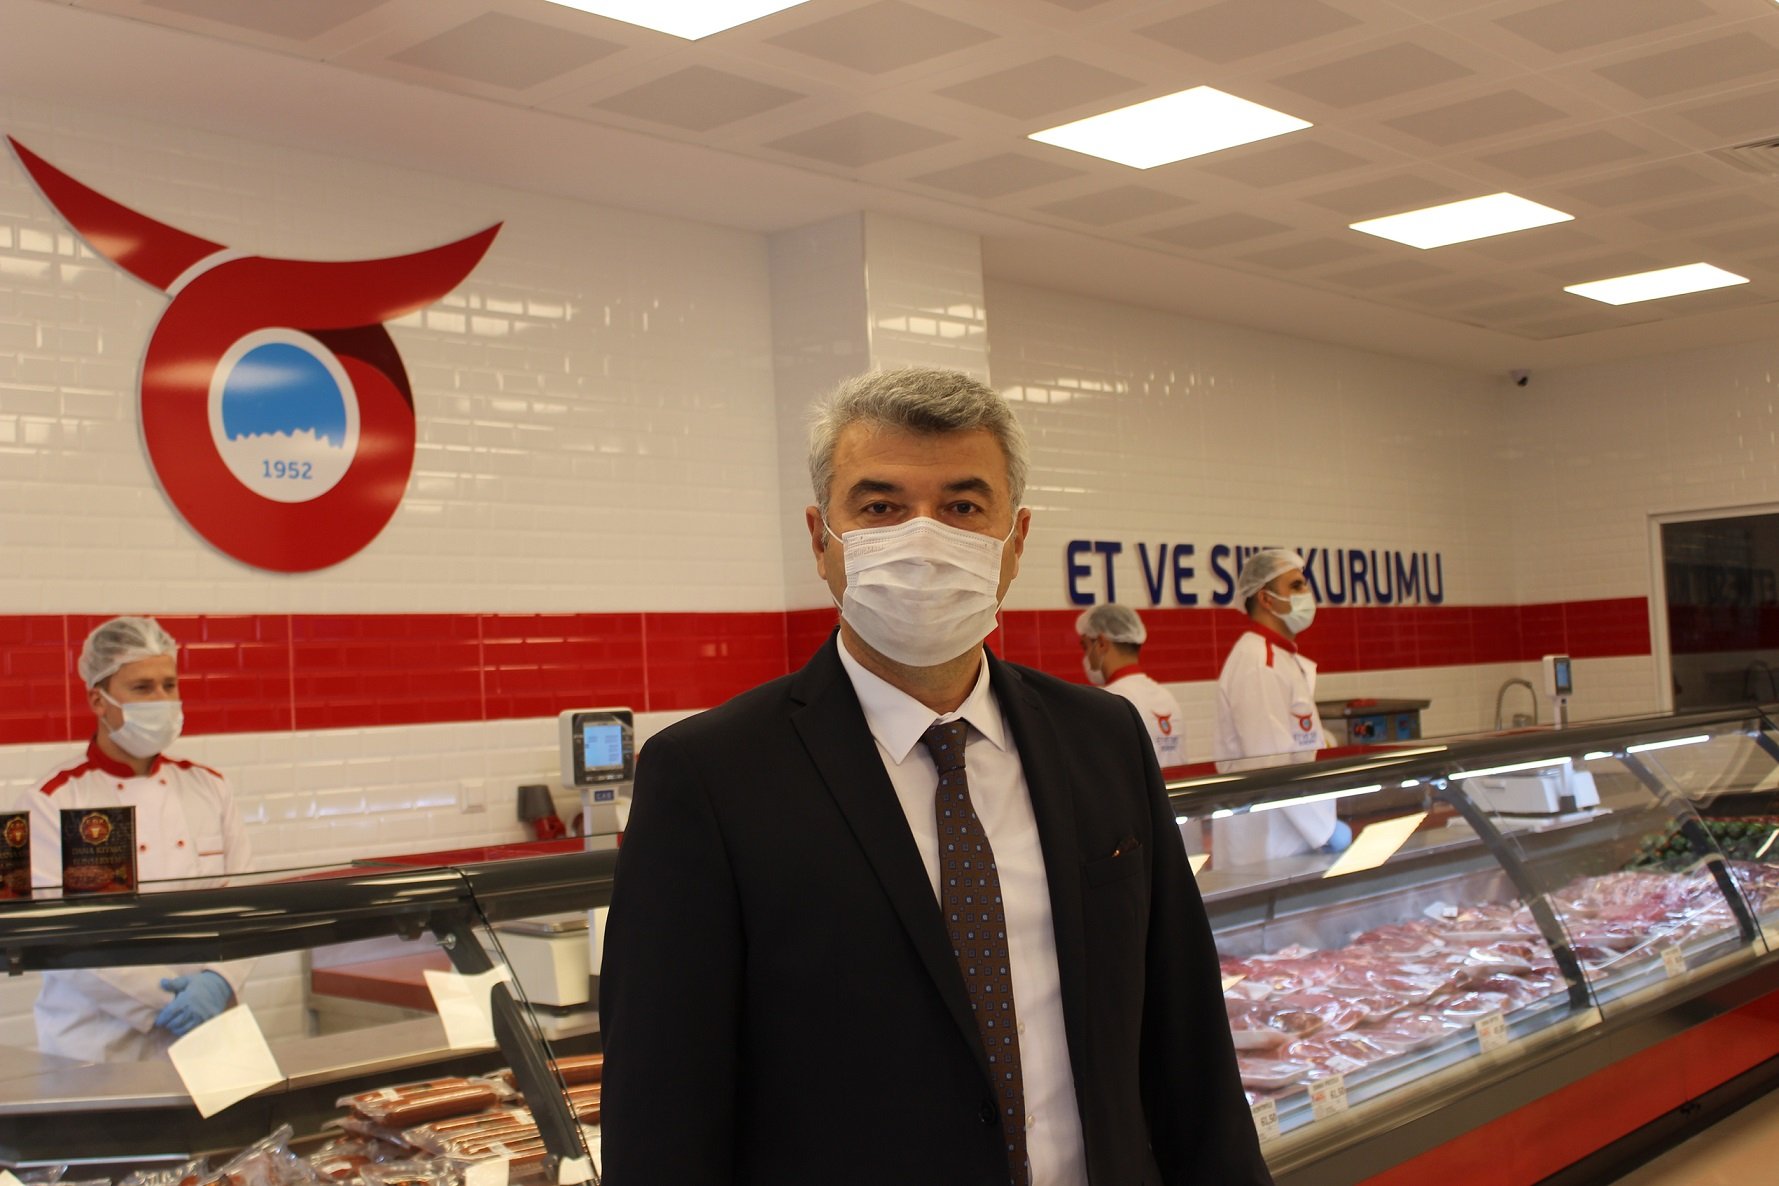 Et ve Süt Kurumu İstanbul’daki ilk Mağazasını Açtı